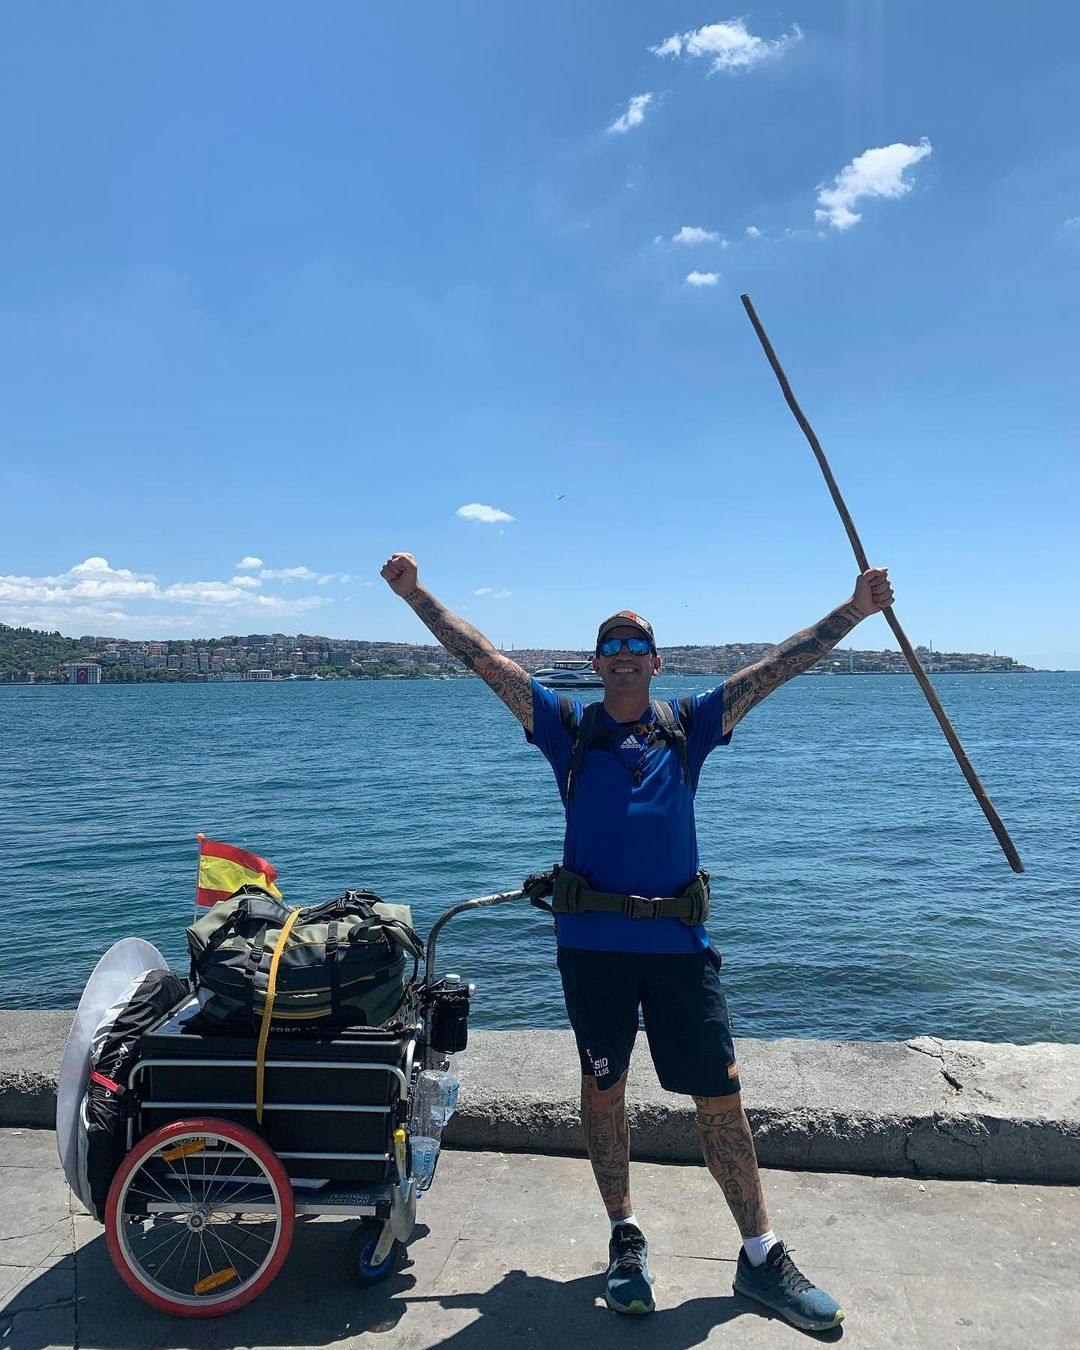 سانتیاگو سانچز، هوادار متعصب فوتبال و گردشگر اسپانیایی با وسایل سفر در شهر استانبول در کرانه دریا دستانش را به آسمان بلند کرده است.